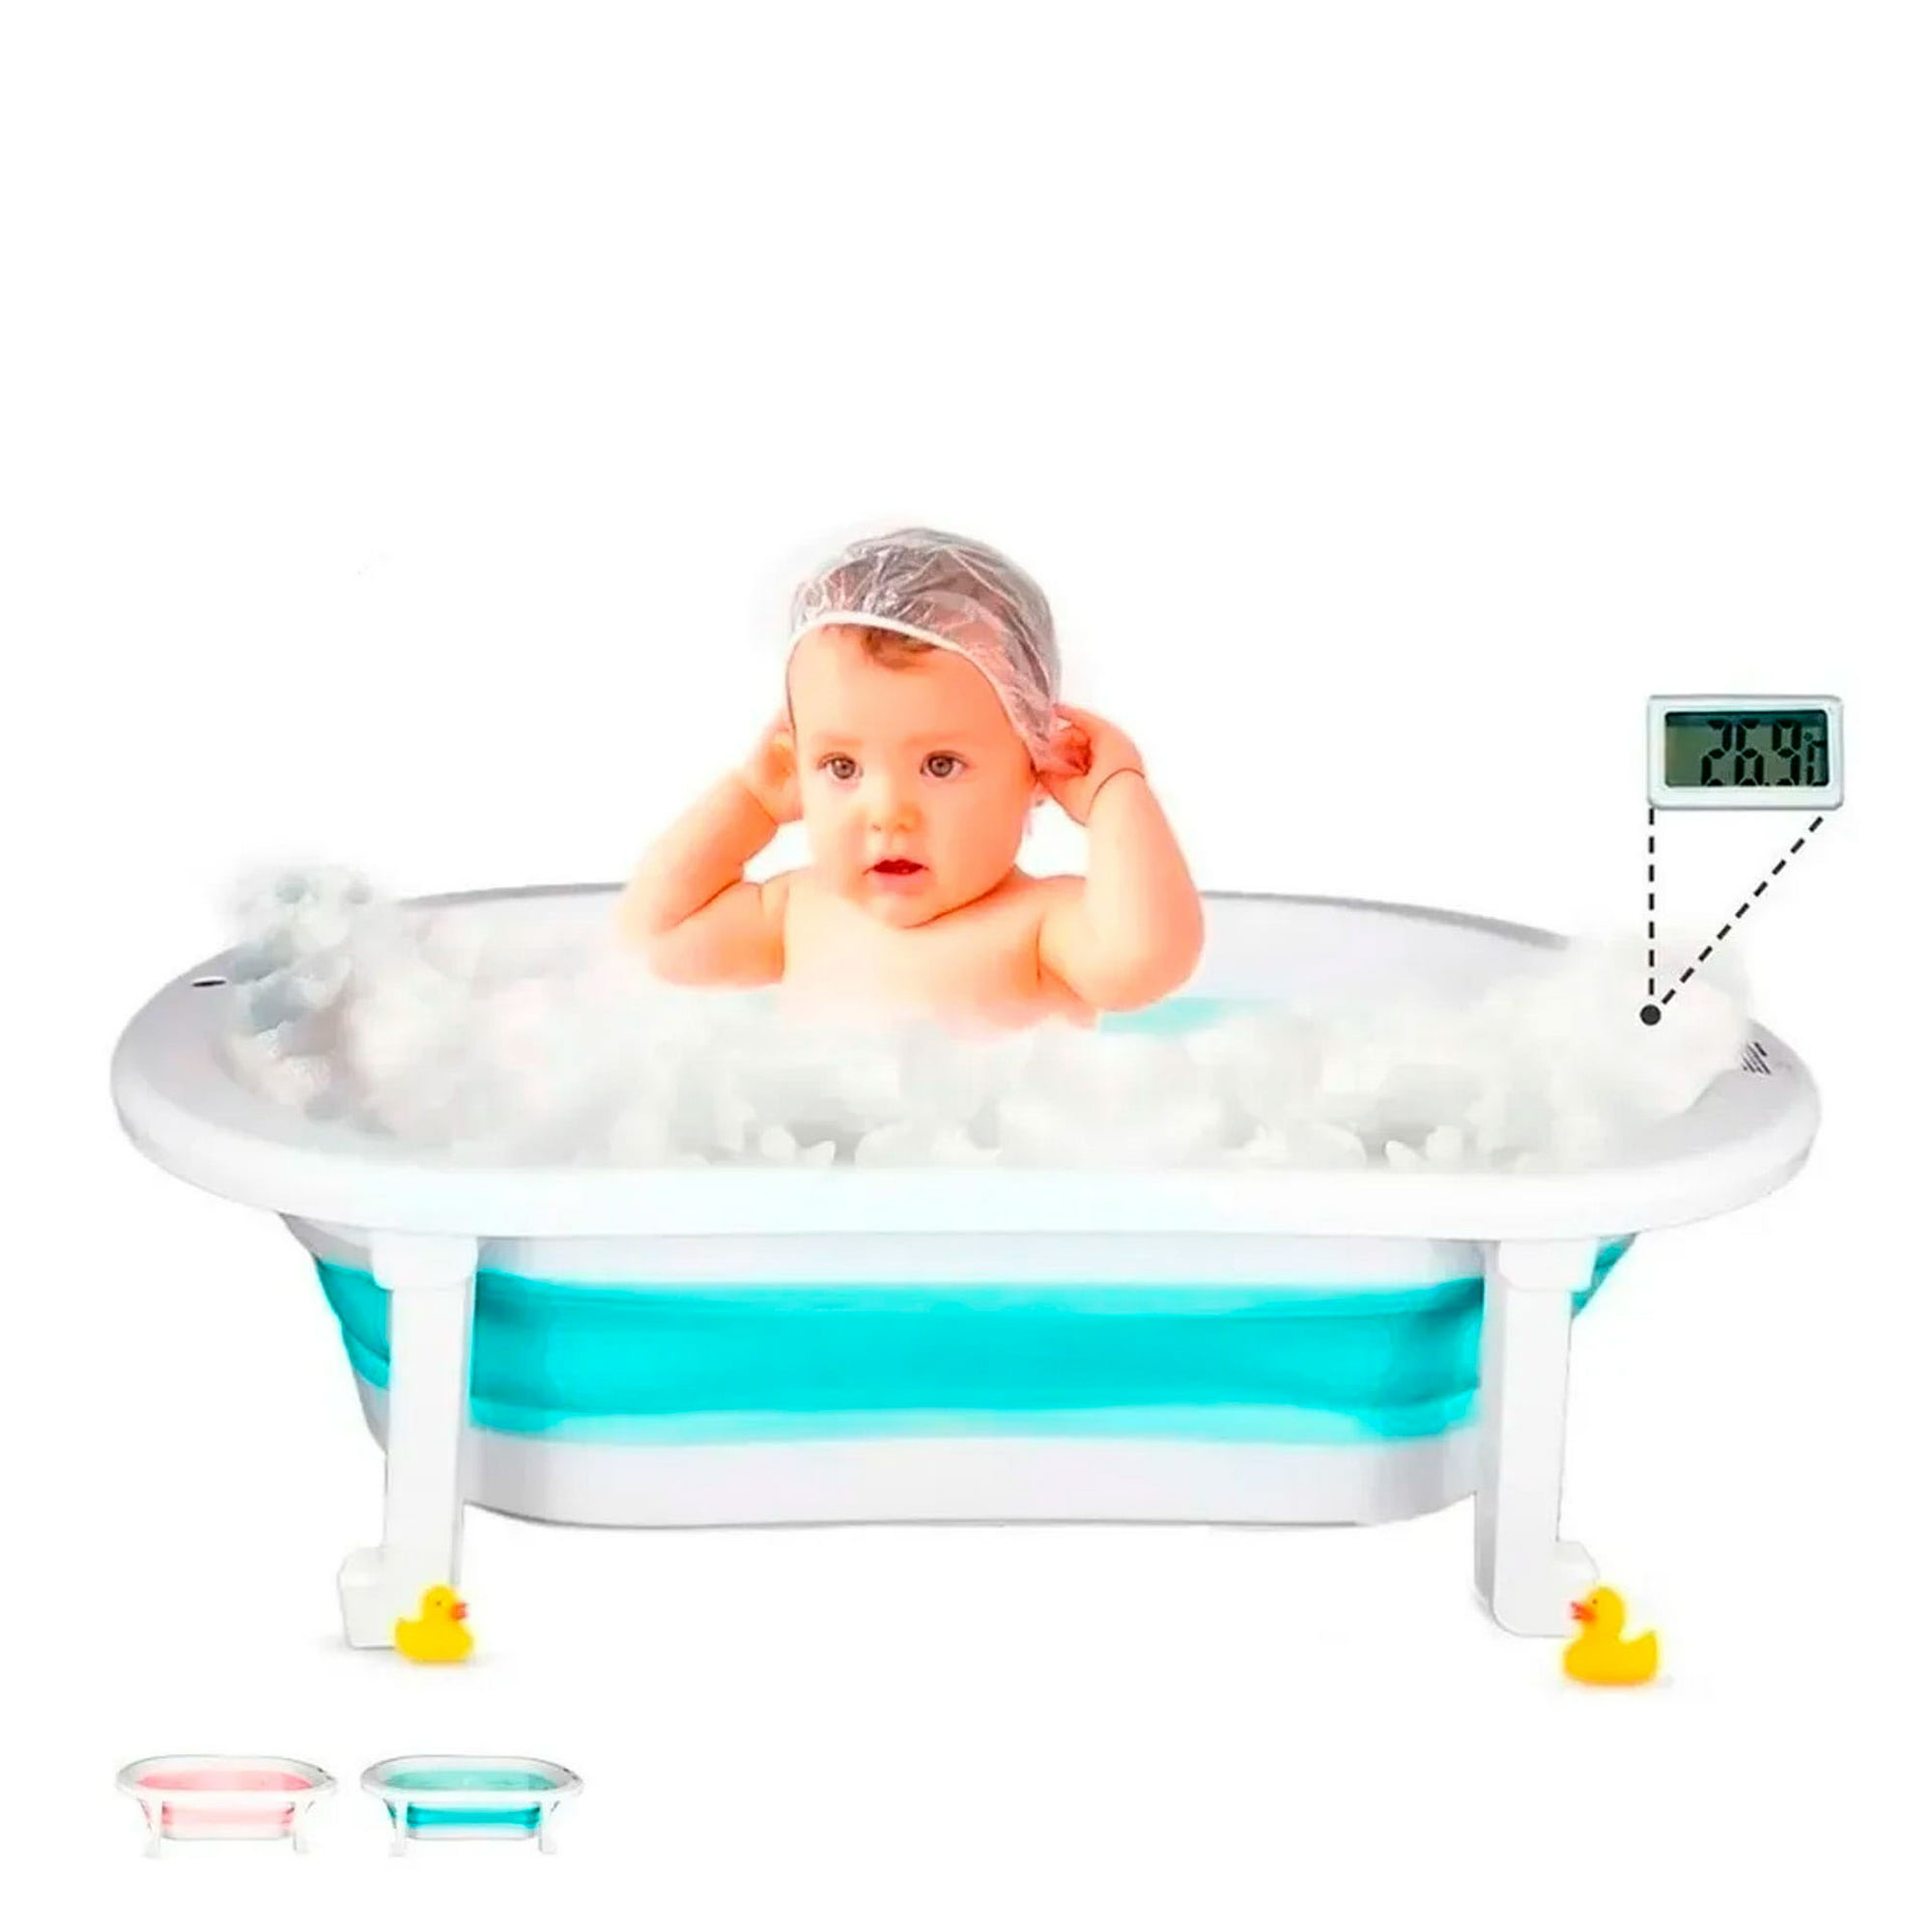 Bañeras Para Bebe O Tinas De Baño Portatil Con Protector